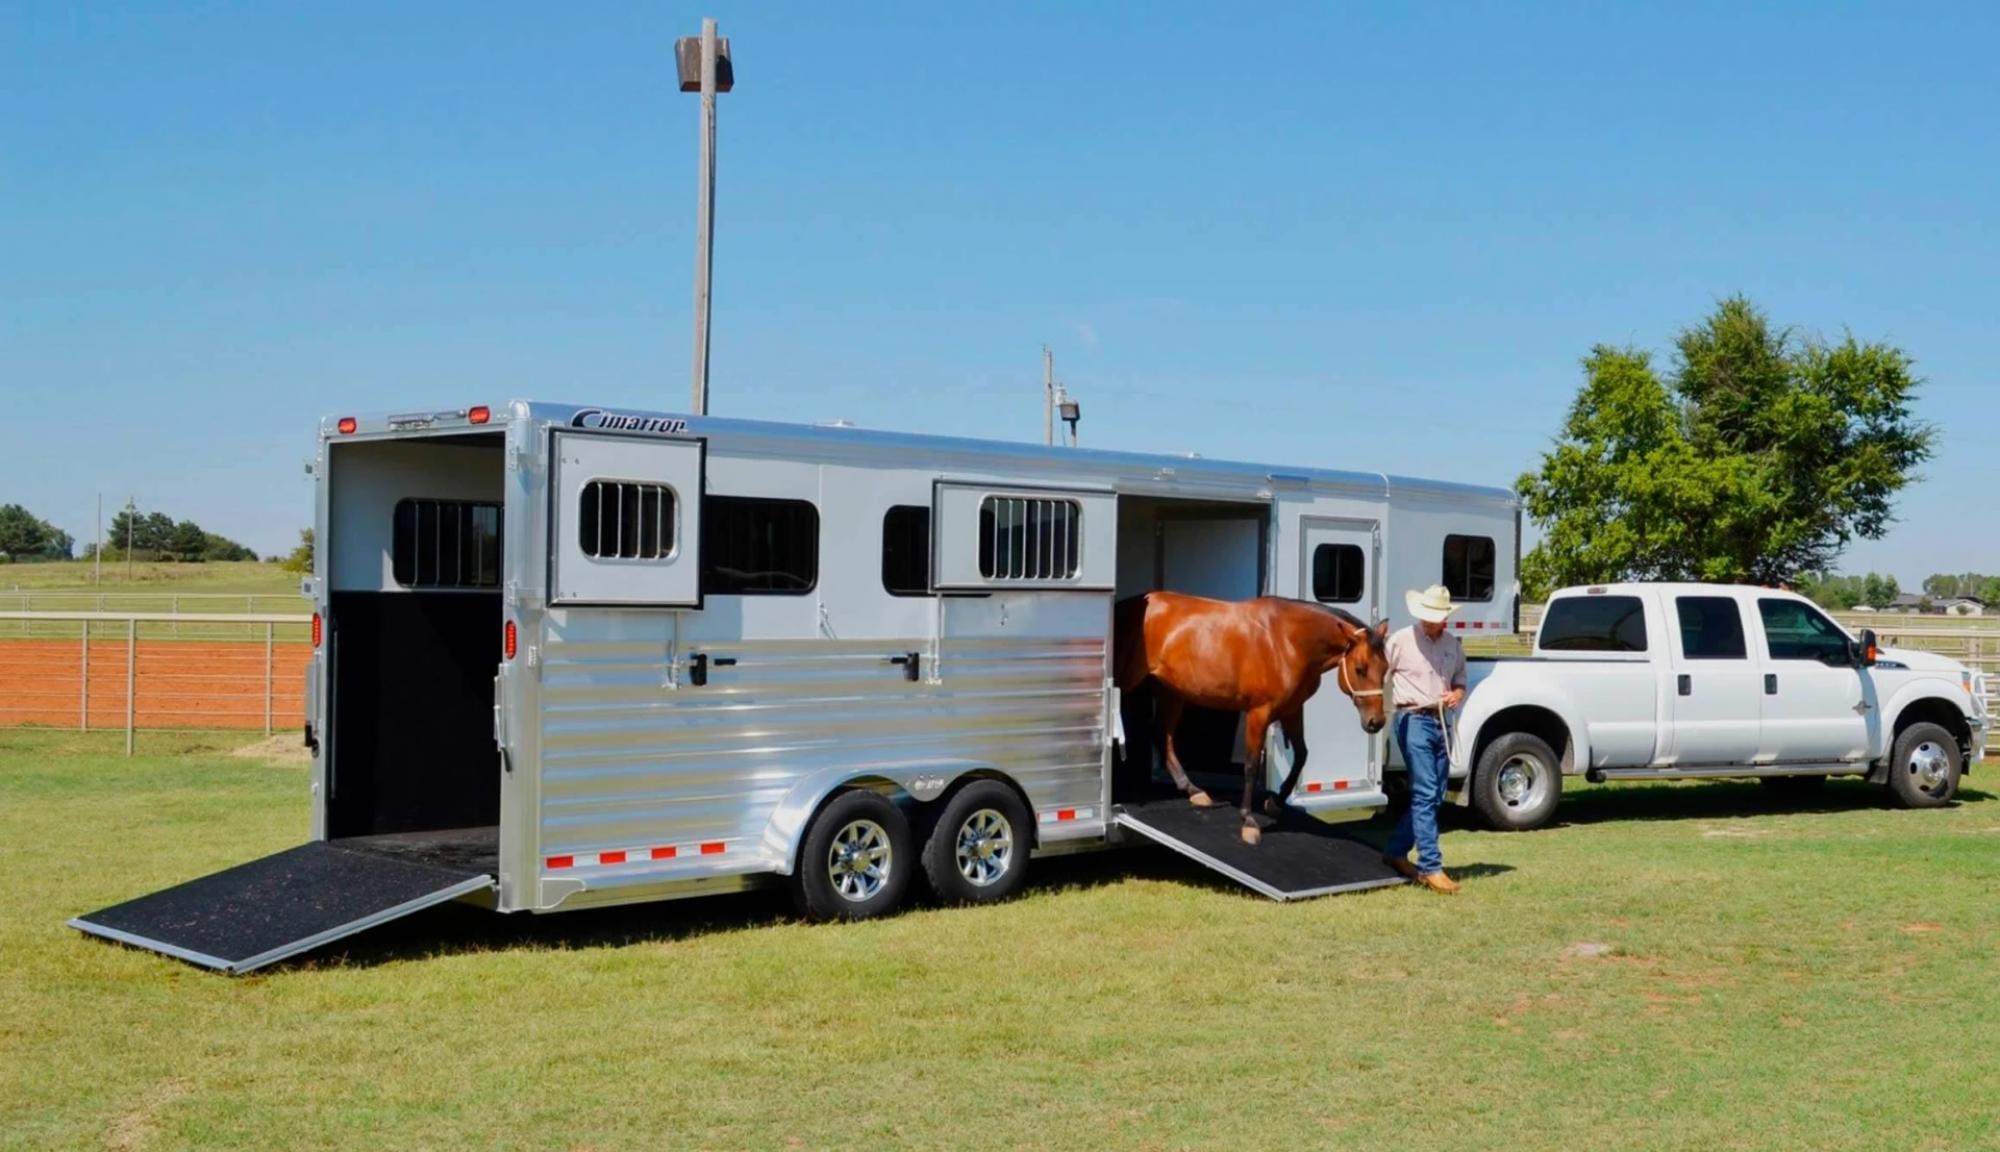 Horse exiting a horse trailer